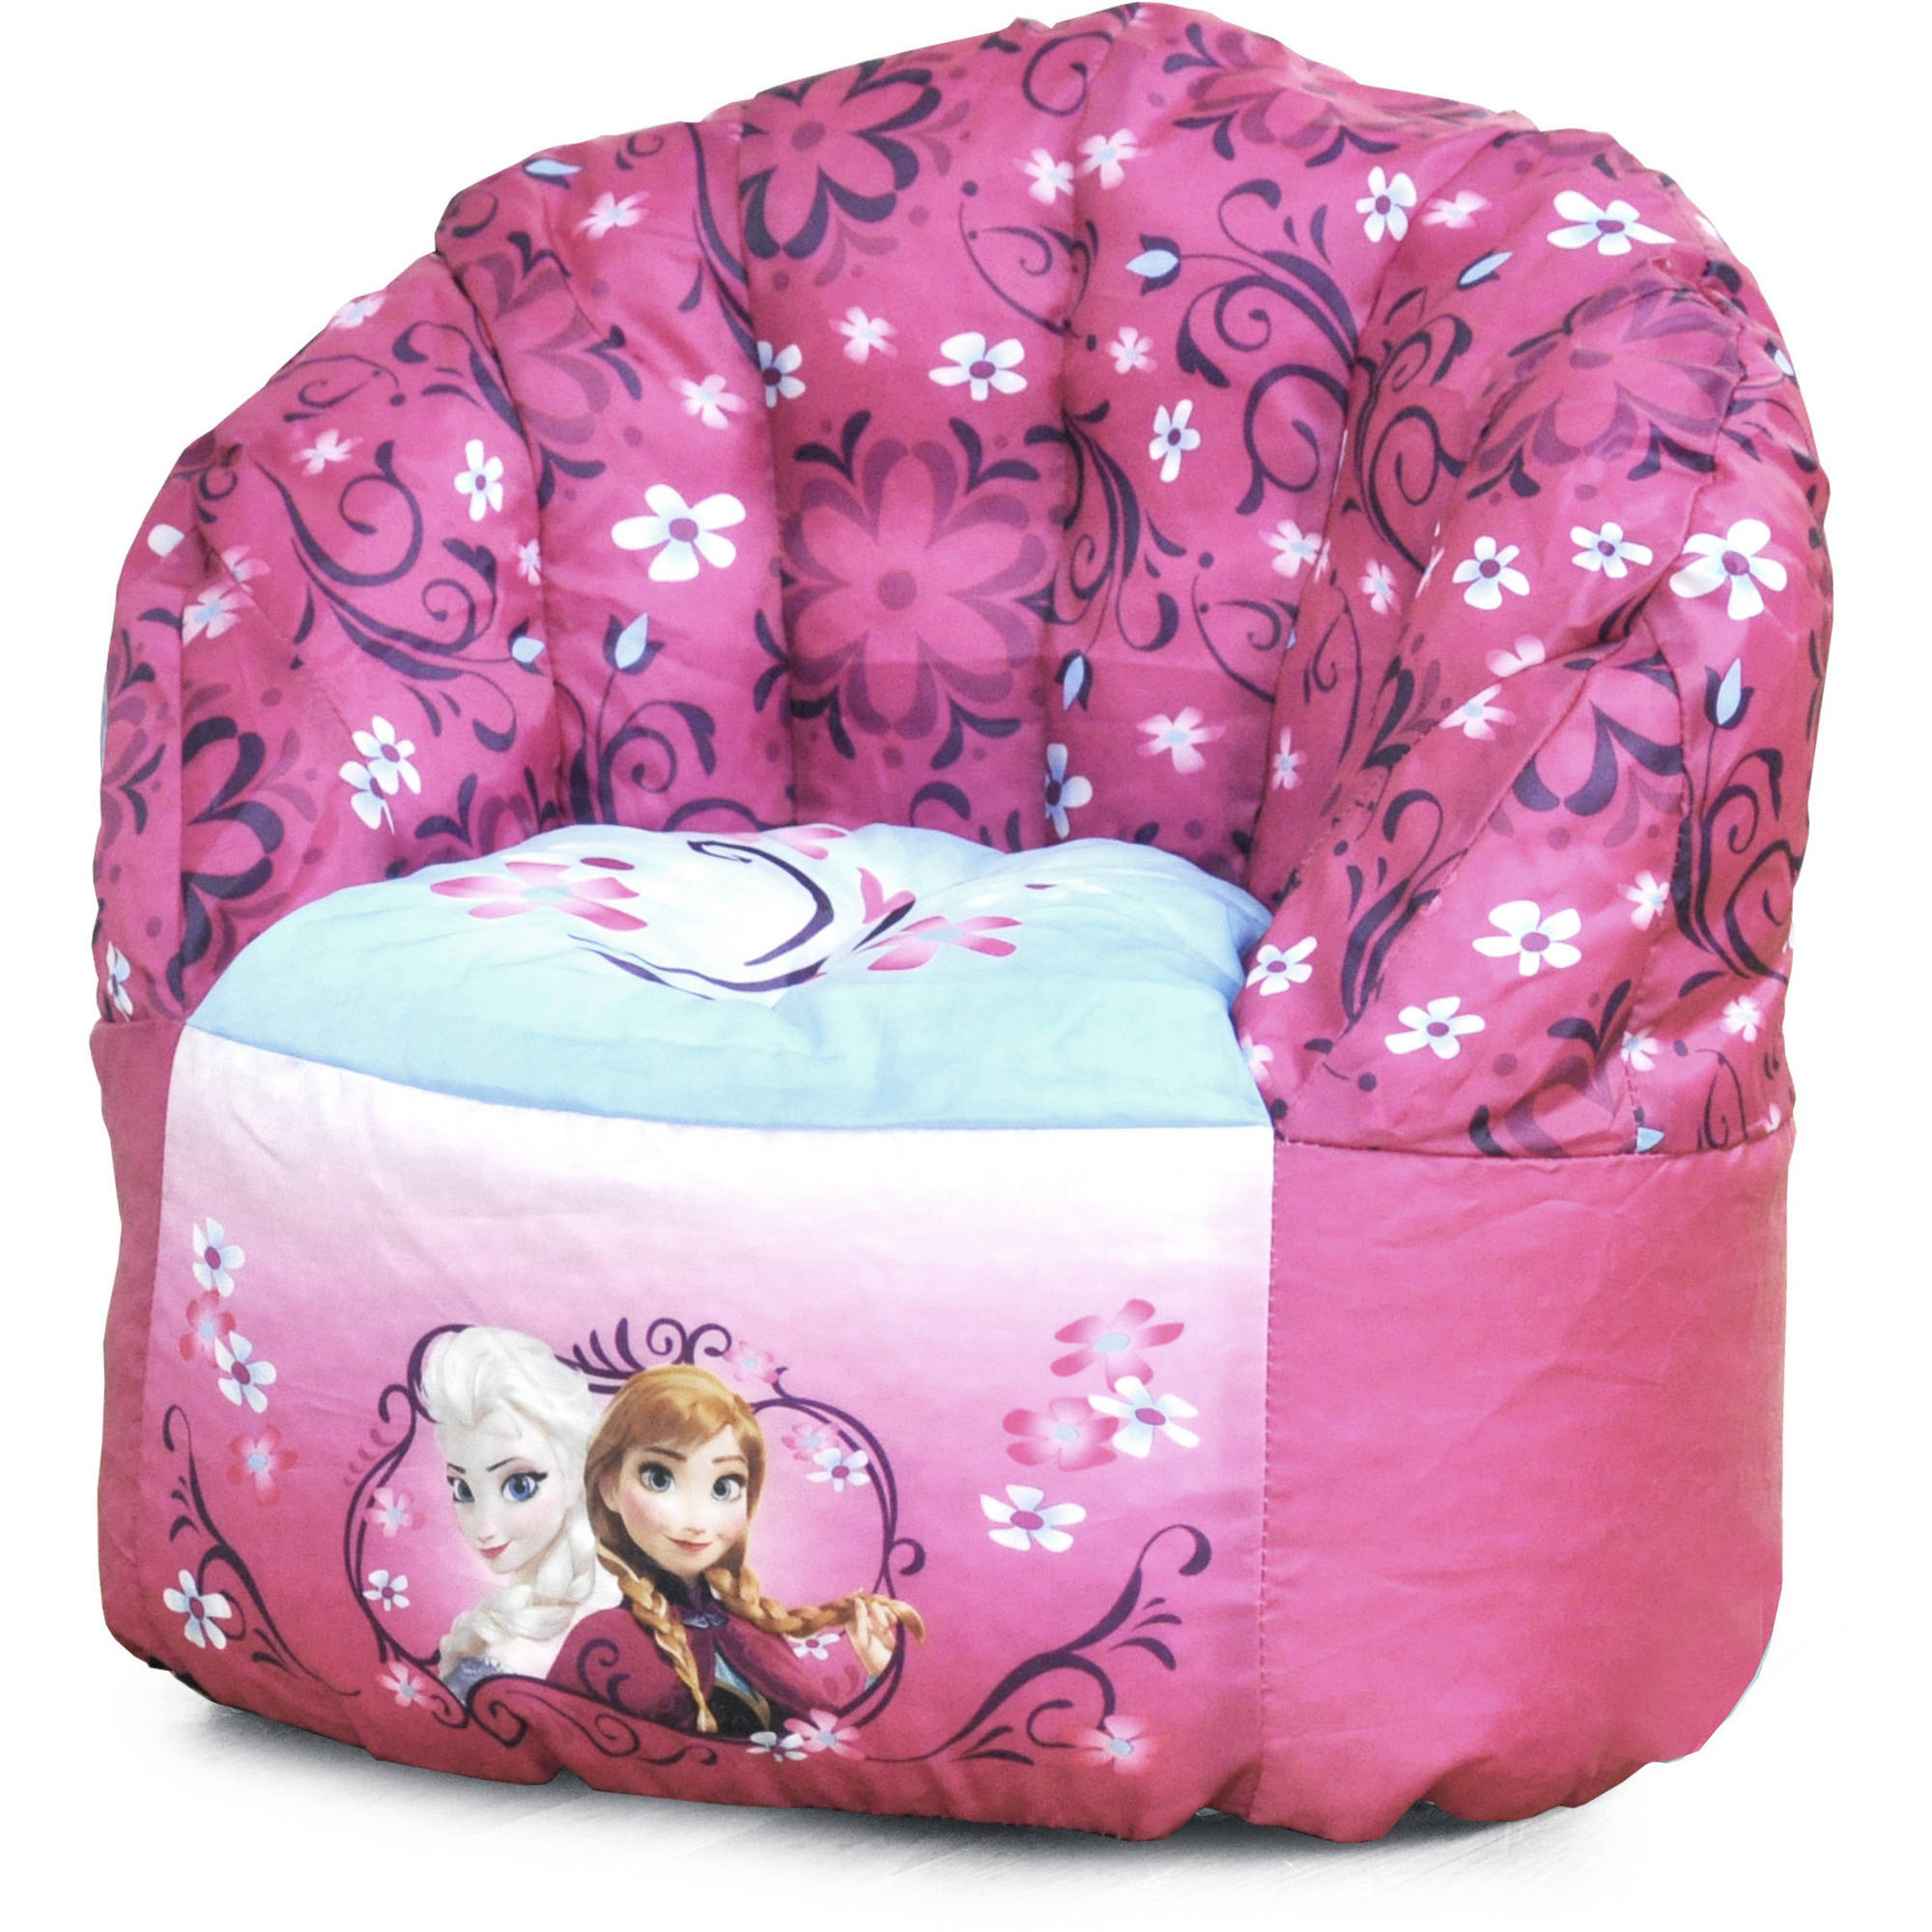 Disney Frozen Bean Bag Chair, Pink